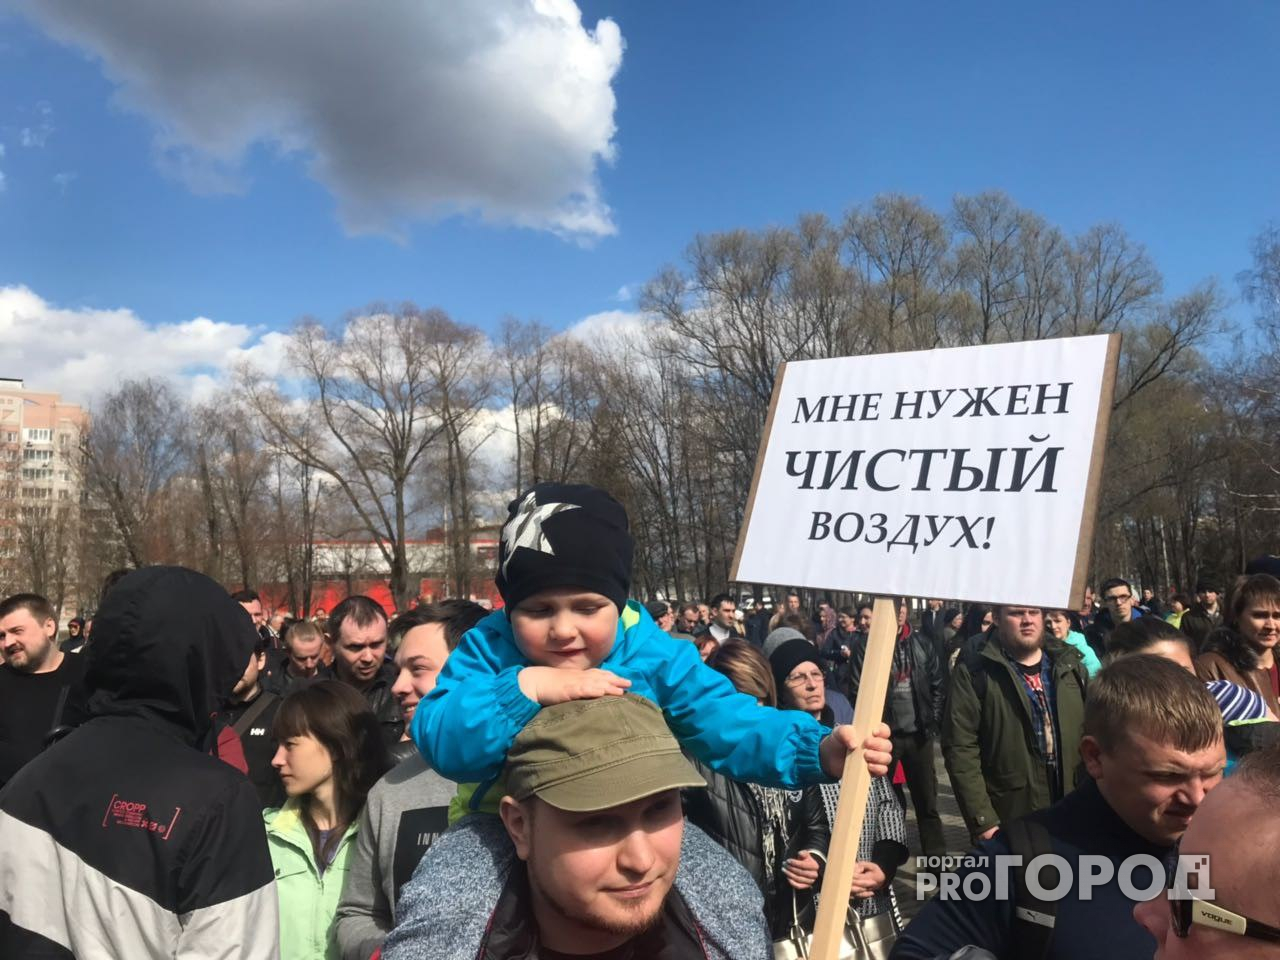 В Брагино проходит митинг против мусора из Москвы. Онлайн-трансляция